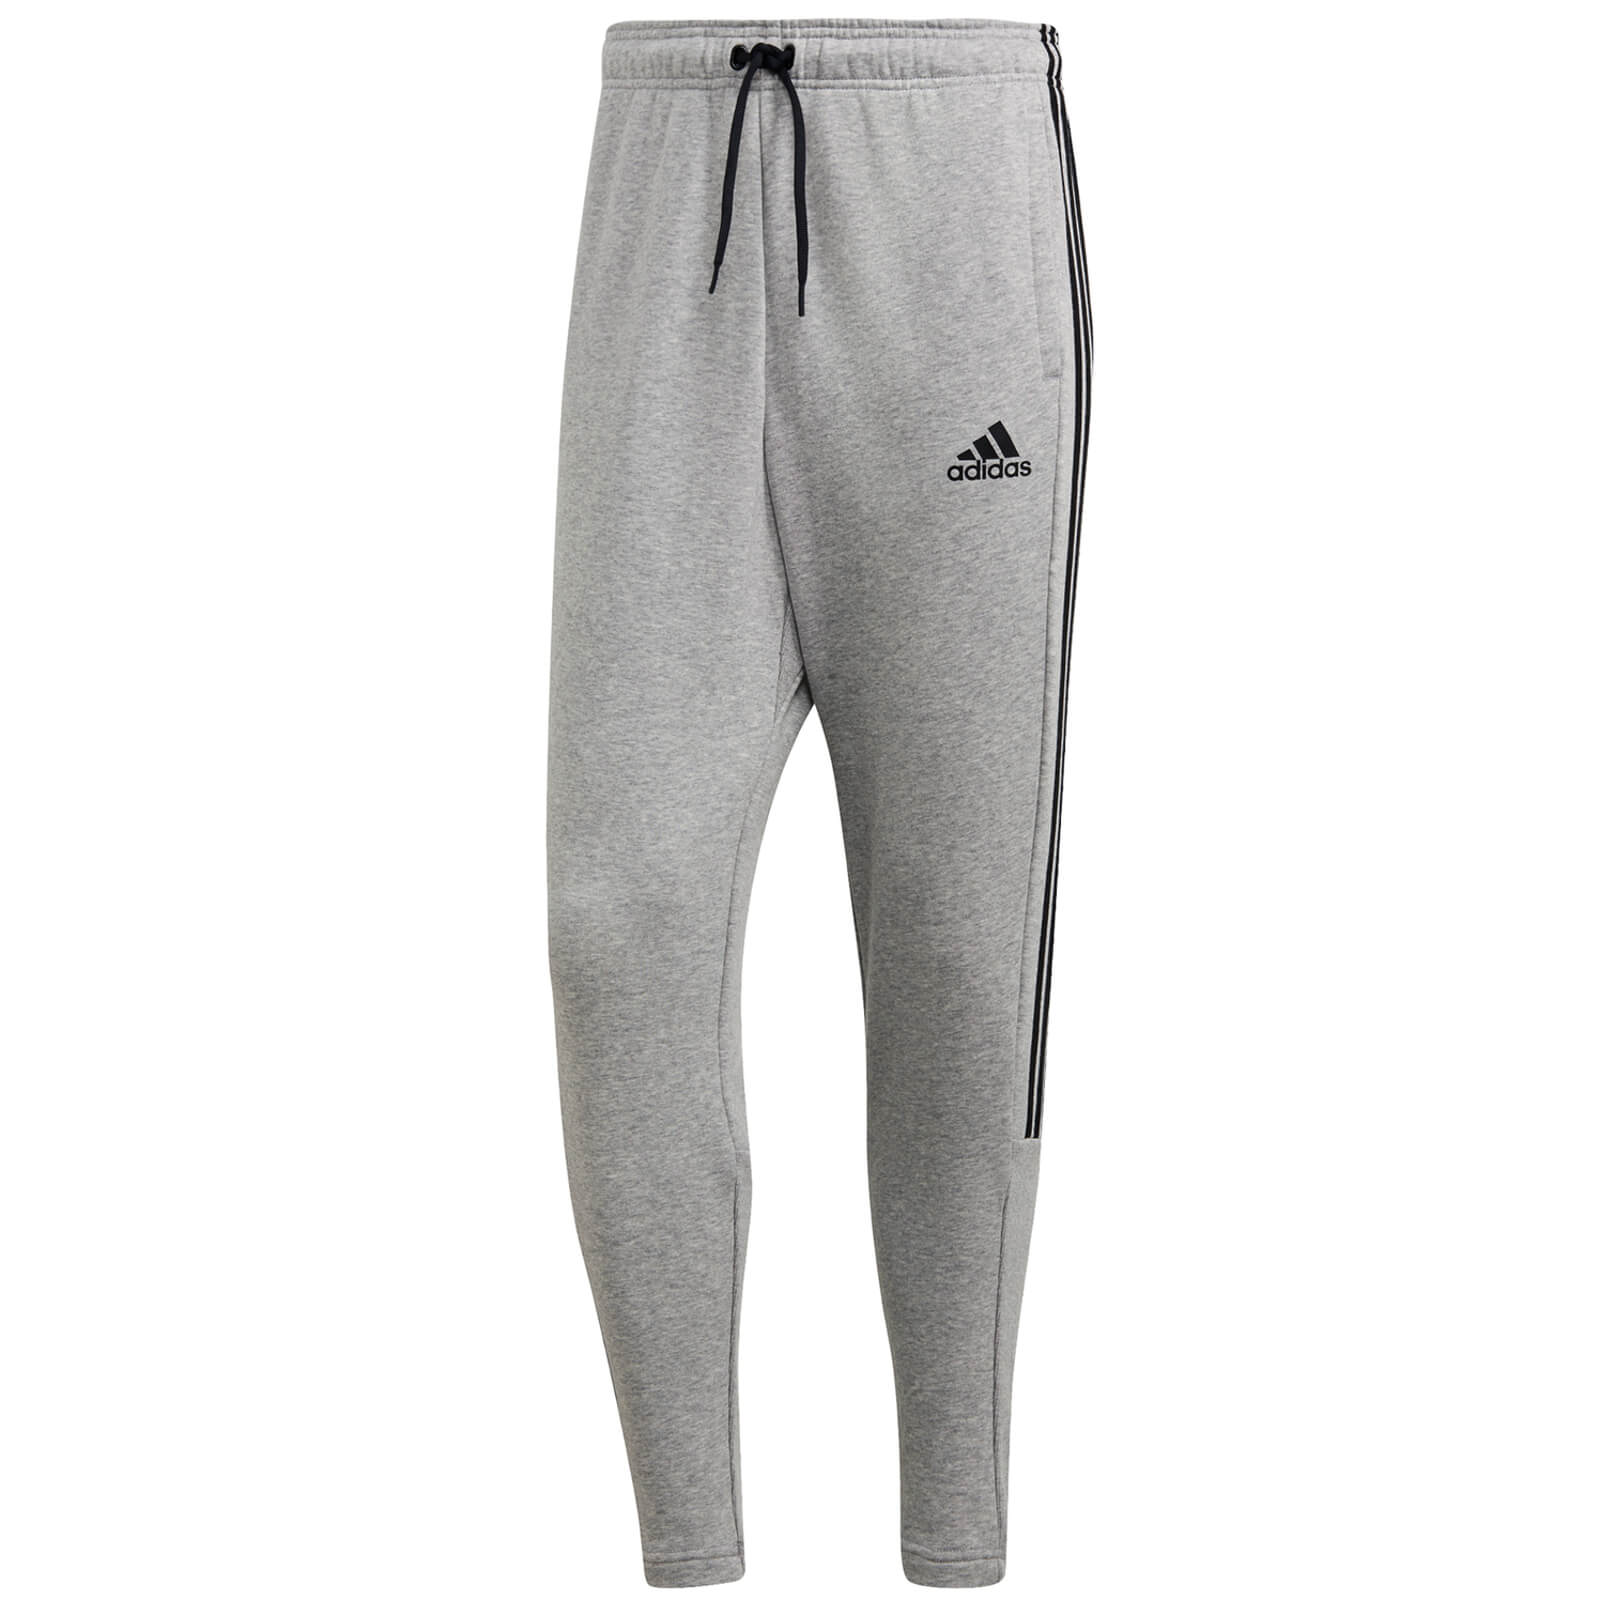 adidas mens joggers grey